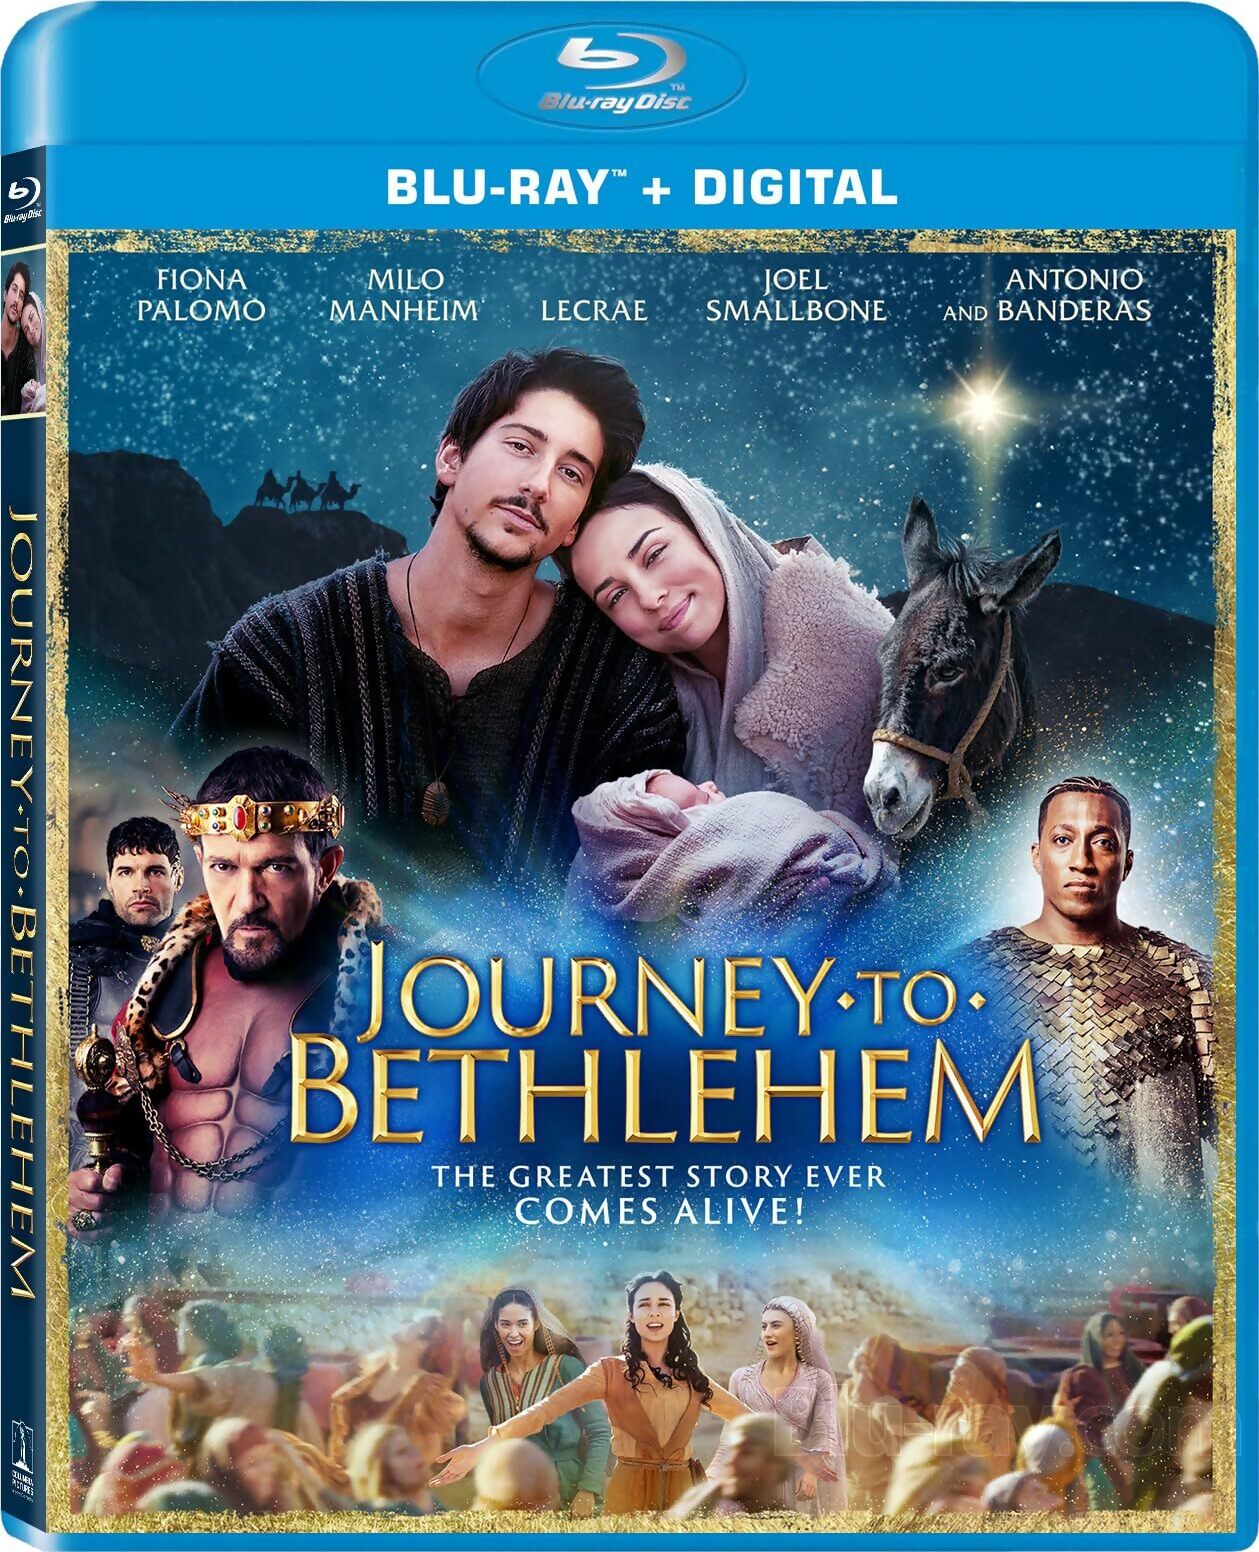 Journey to Bethlehem Blu-ray